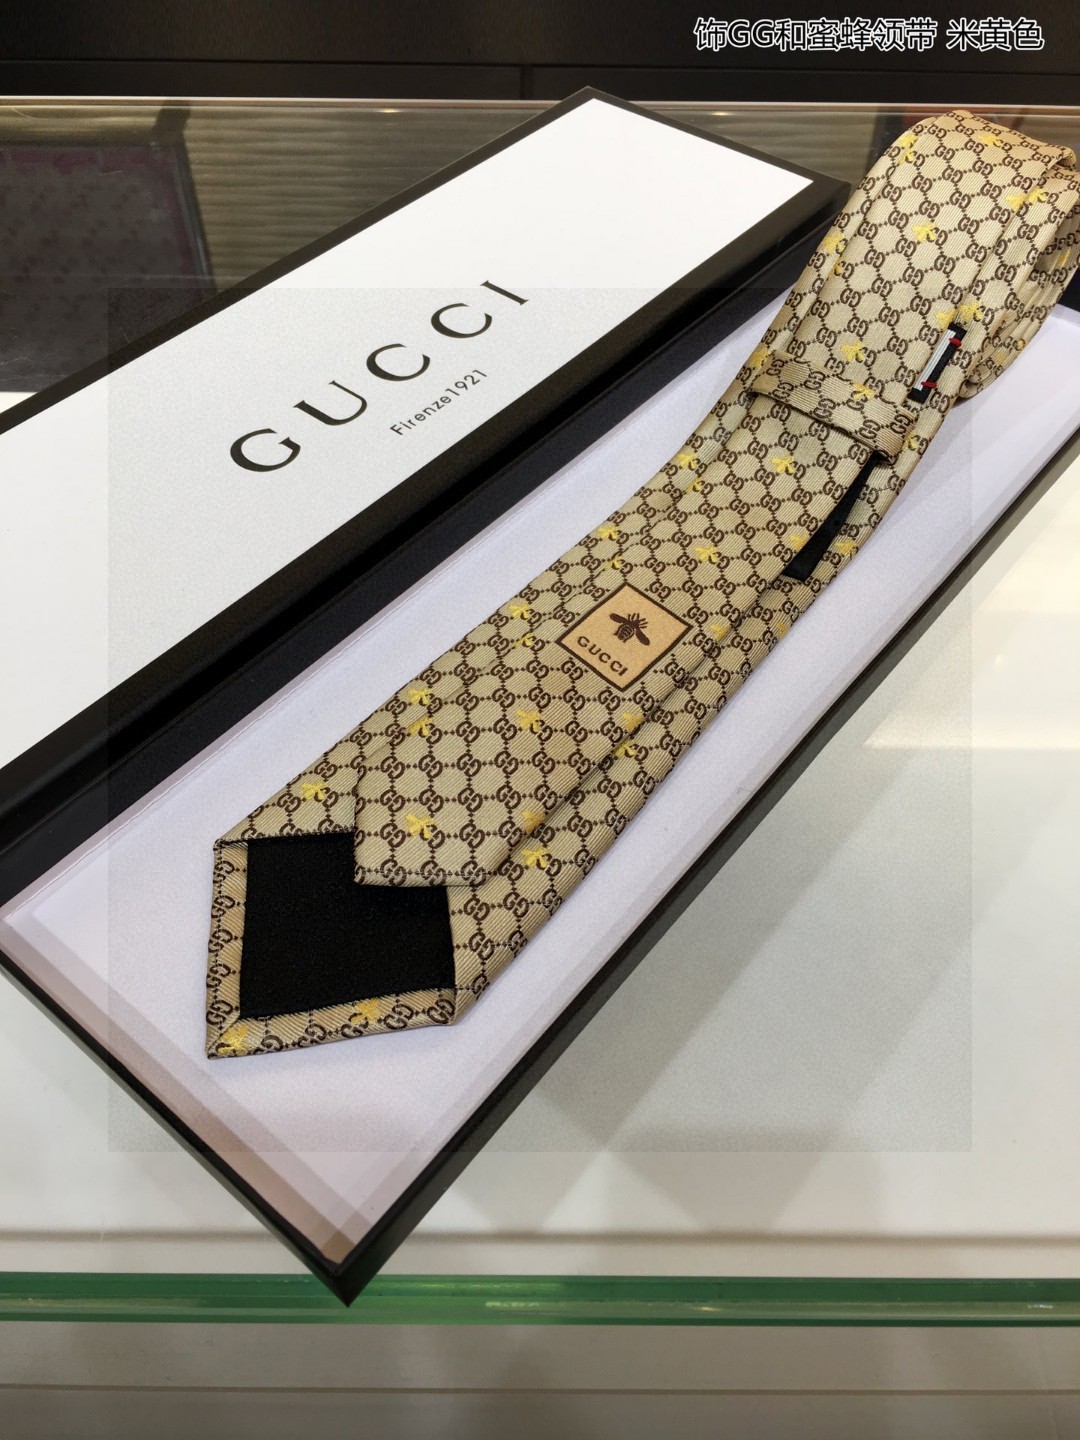 特价G家专柜新款男士领带饰GG和蜜蜂领带稀有采用经典小GLOGO提花展现精湛手工与时尚优雅的理想选择这款